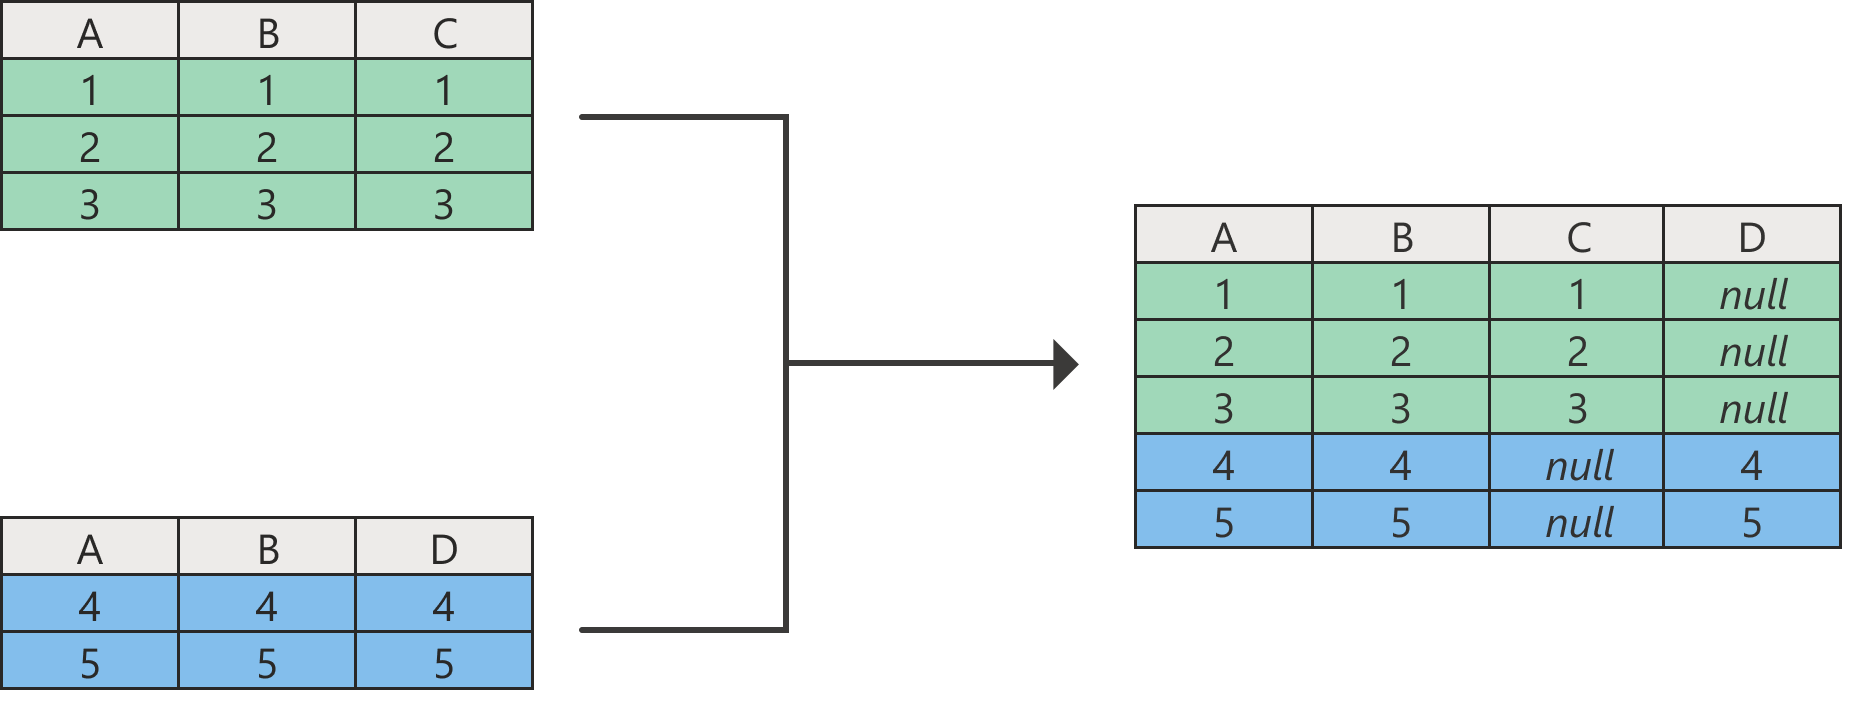 Az eredeti táblák egyikében nem szereplő oszlopokban null értékű hozzáfűzési művelet eredményét ábrázoló diagram.